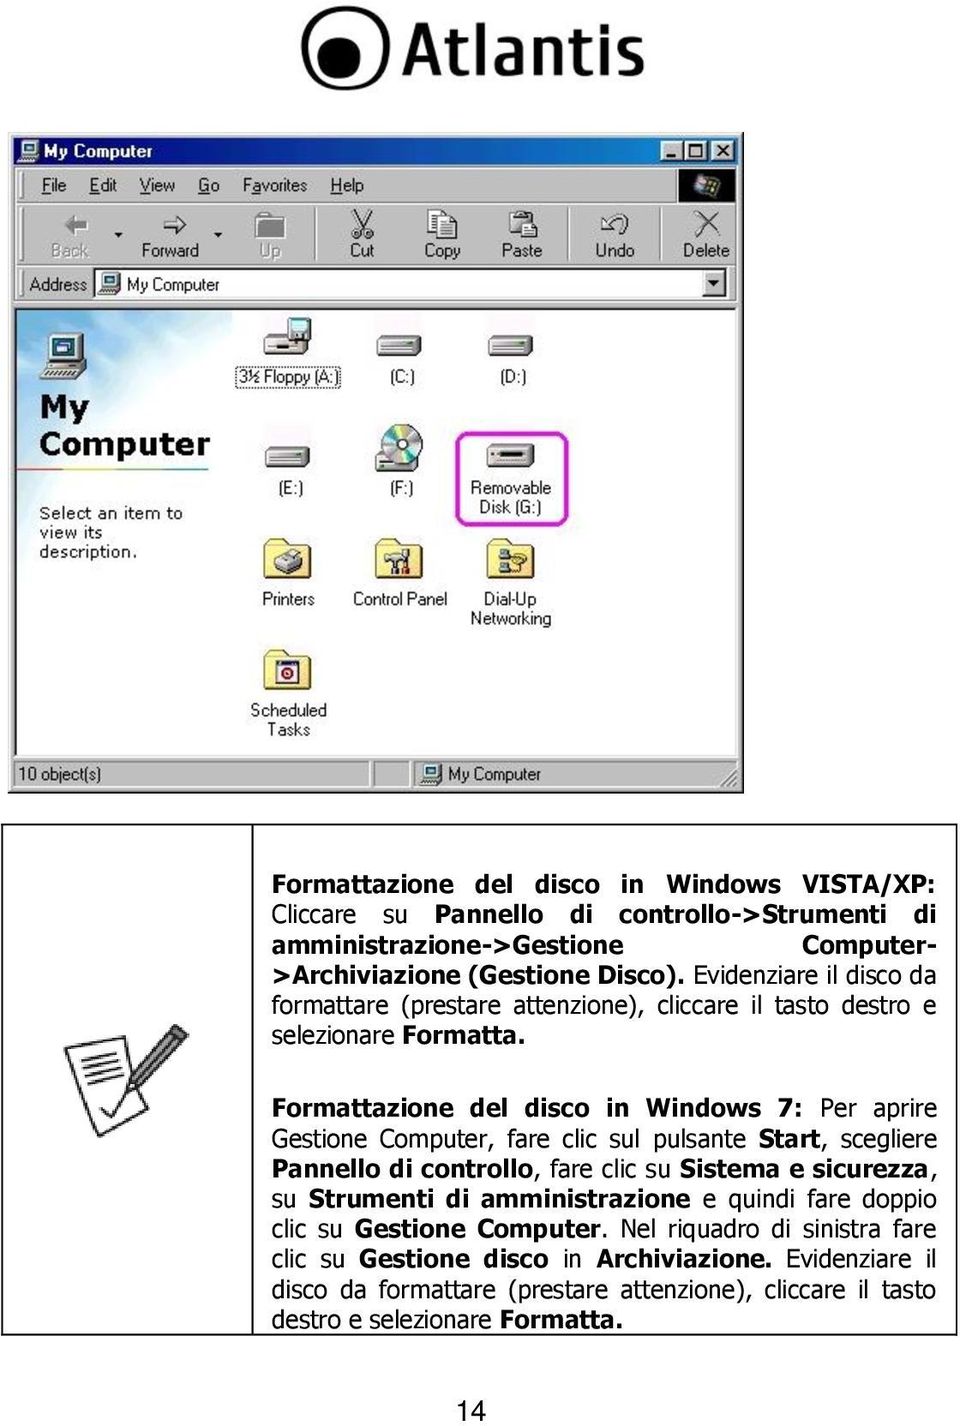 Formattazione del disco in Windows 7: Per aprire Gestione Computer, fare clic sul pulsante Start, scegliere Pannello di controllo, fare clic su Sistema e sicurezza, su